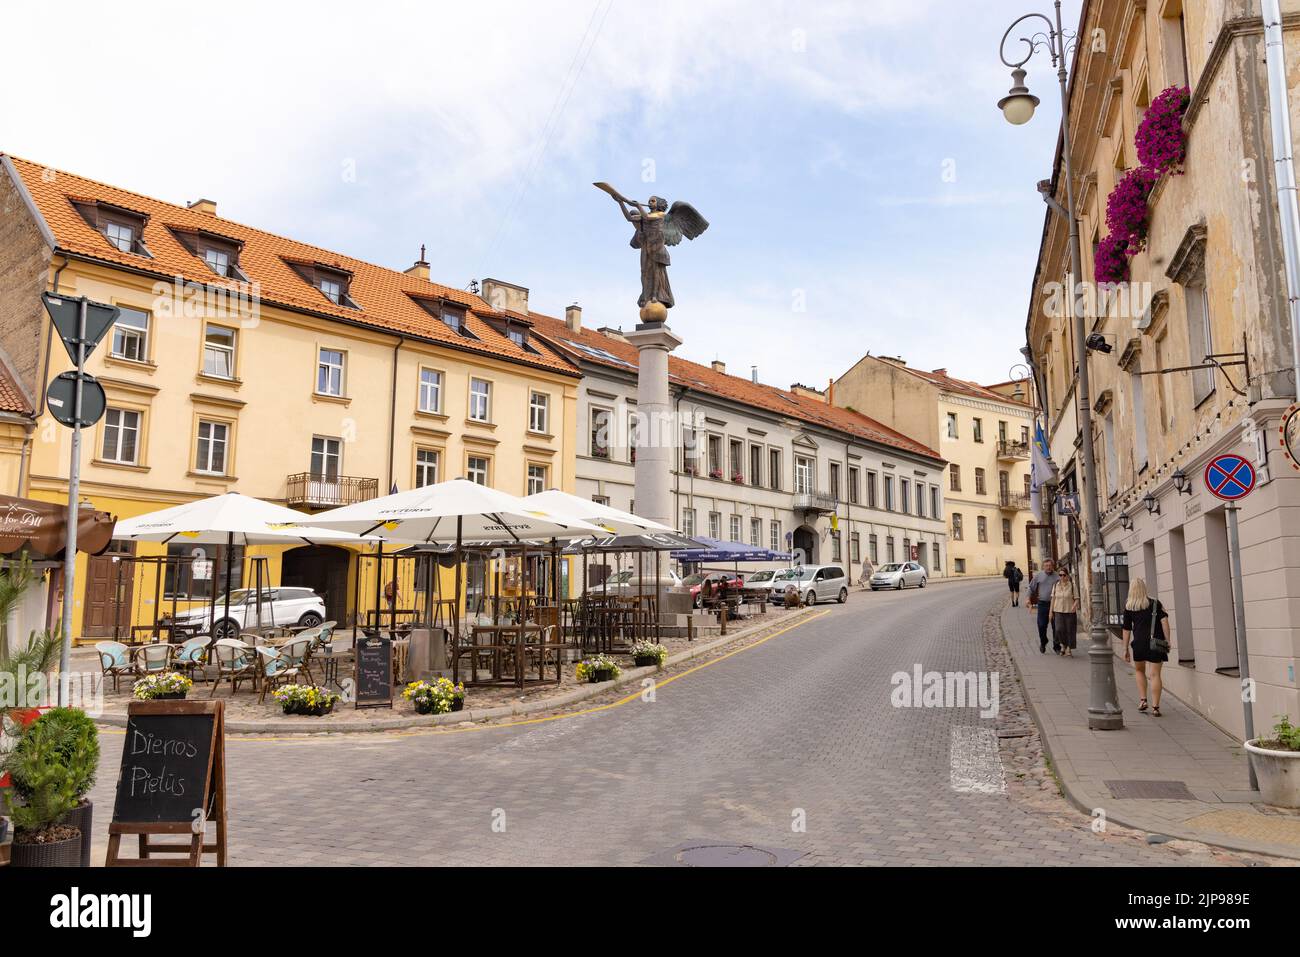 Ange d'Uzupuis statue de Romas Vilčiauskas dans l'Ange de la place d'Uzupuis, est un symbole de la république d'Uzupuis, la vieille ville de Vilnius, Vilnius Lituanie Banque D'Images